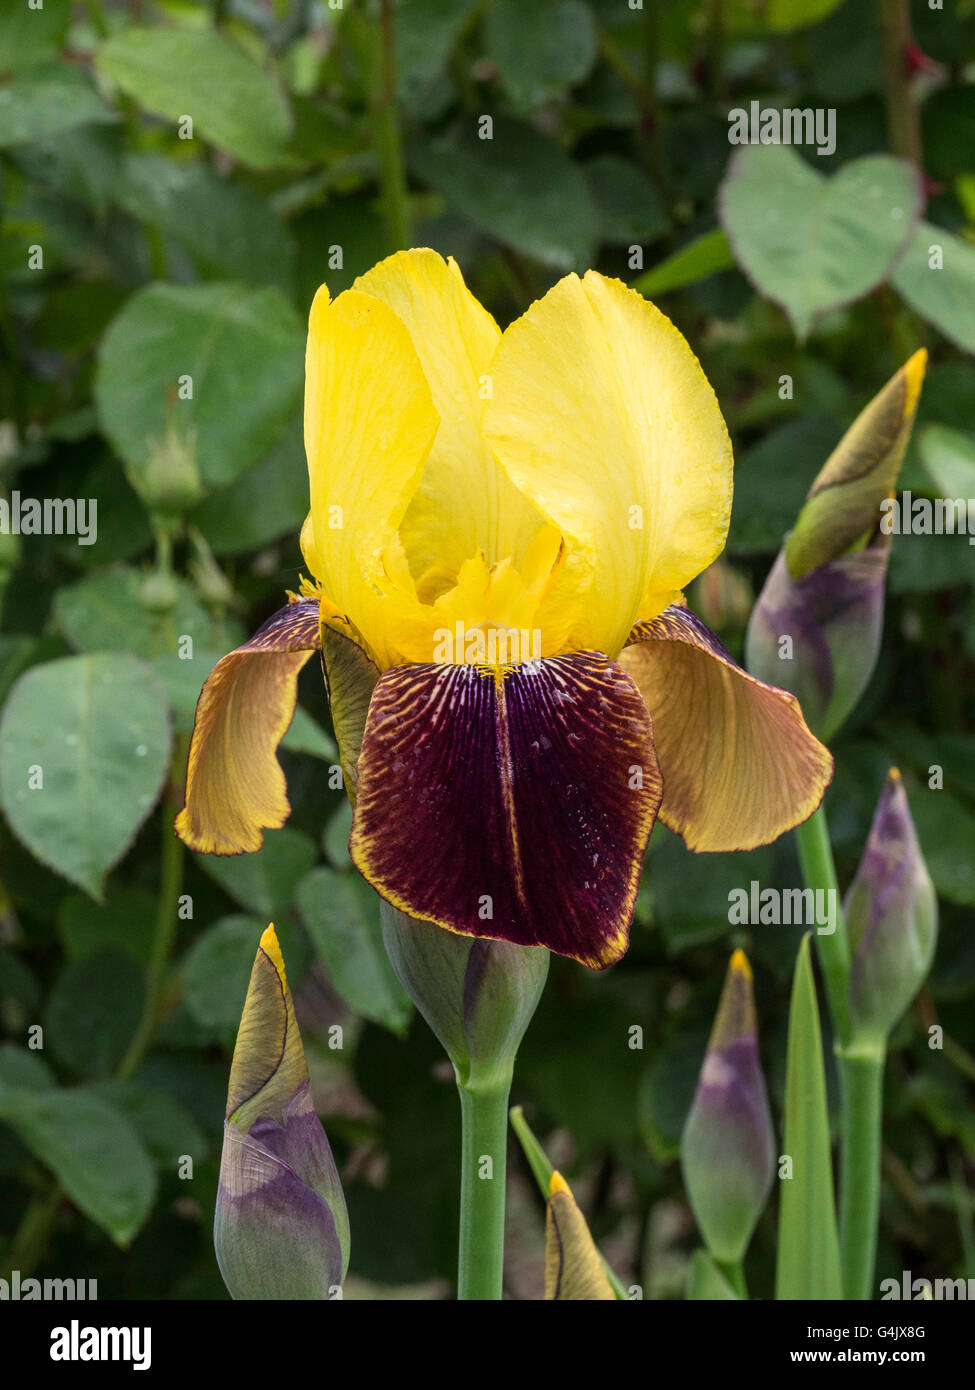 Bearded iris 'Rajah' flower Stock Photo